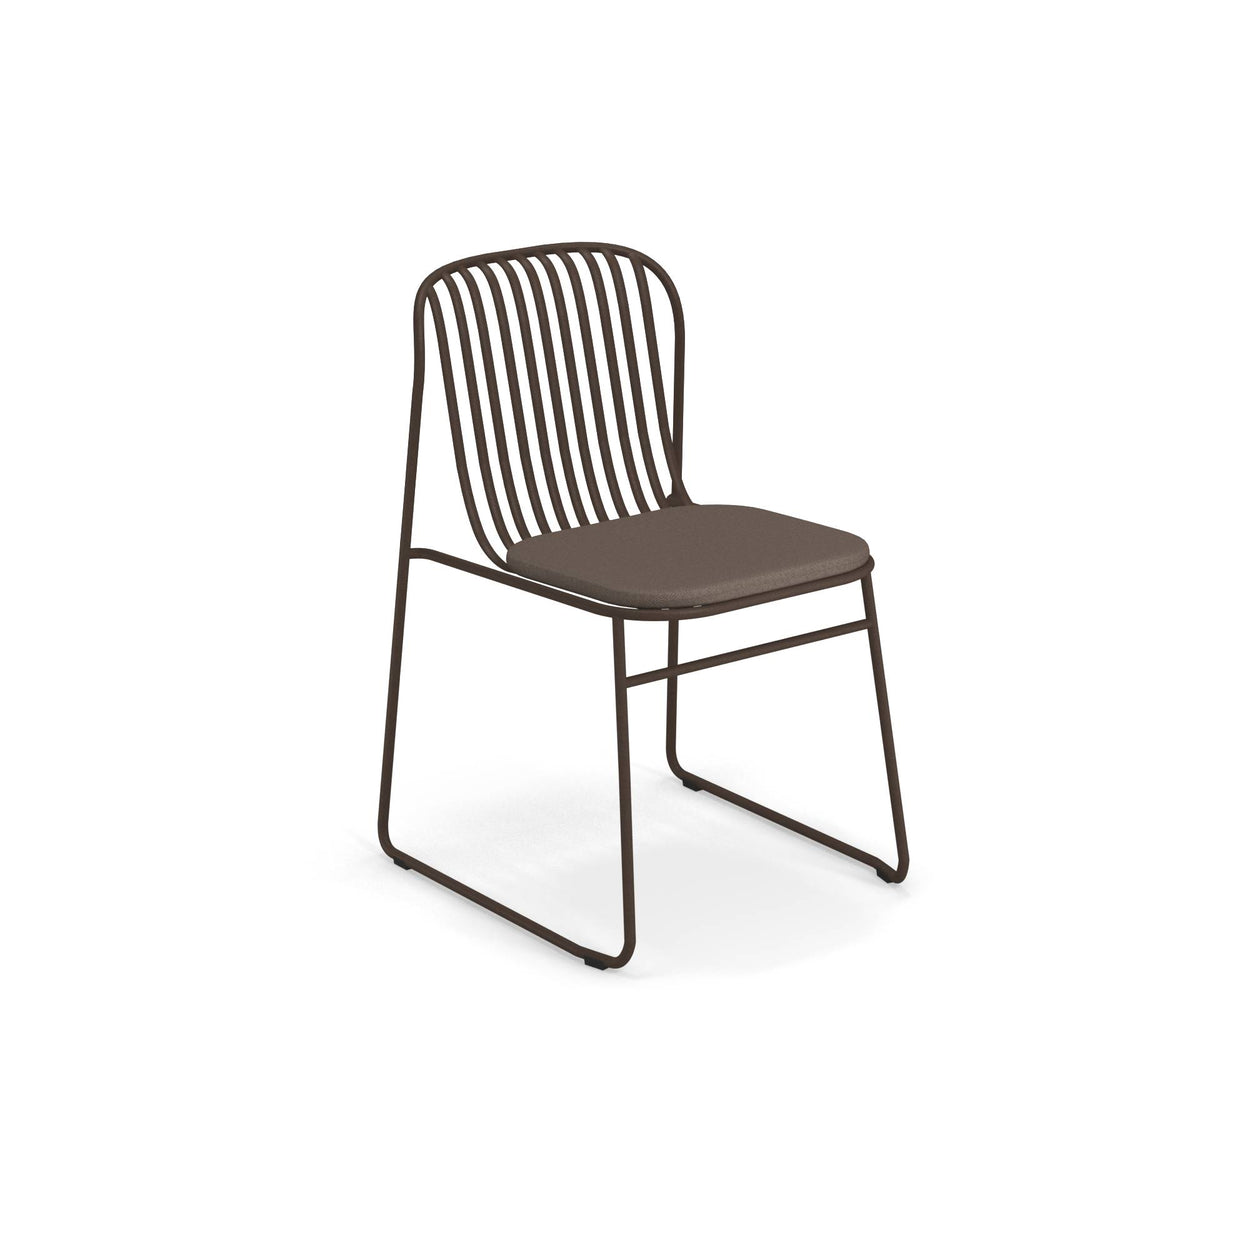 Riviera chair / 2 stuks